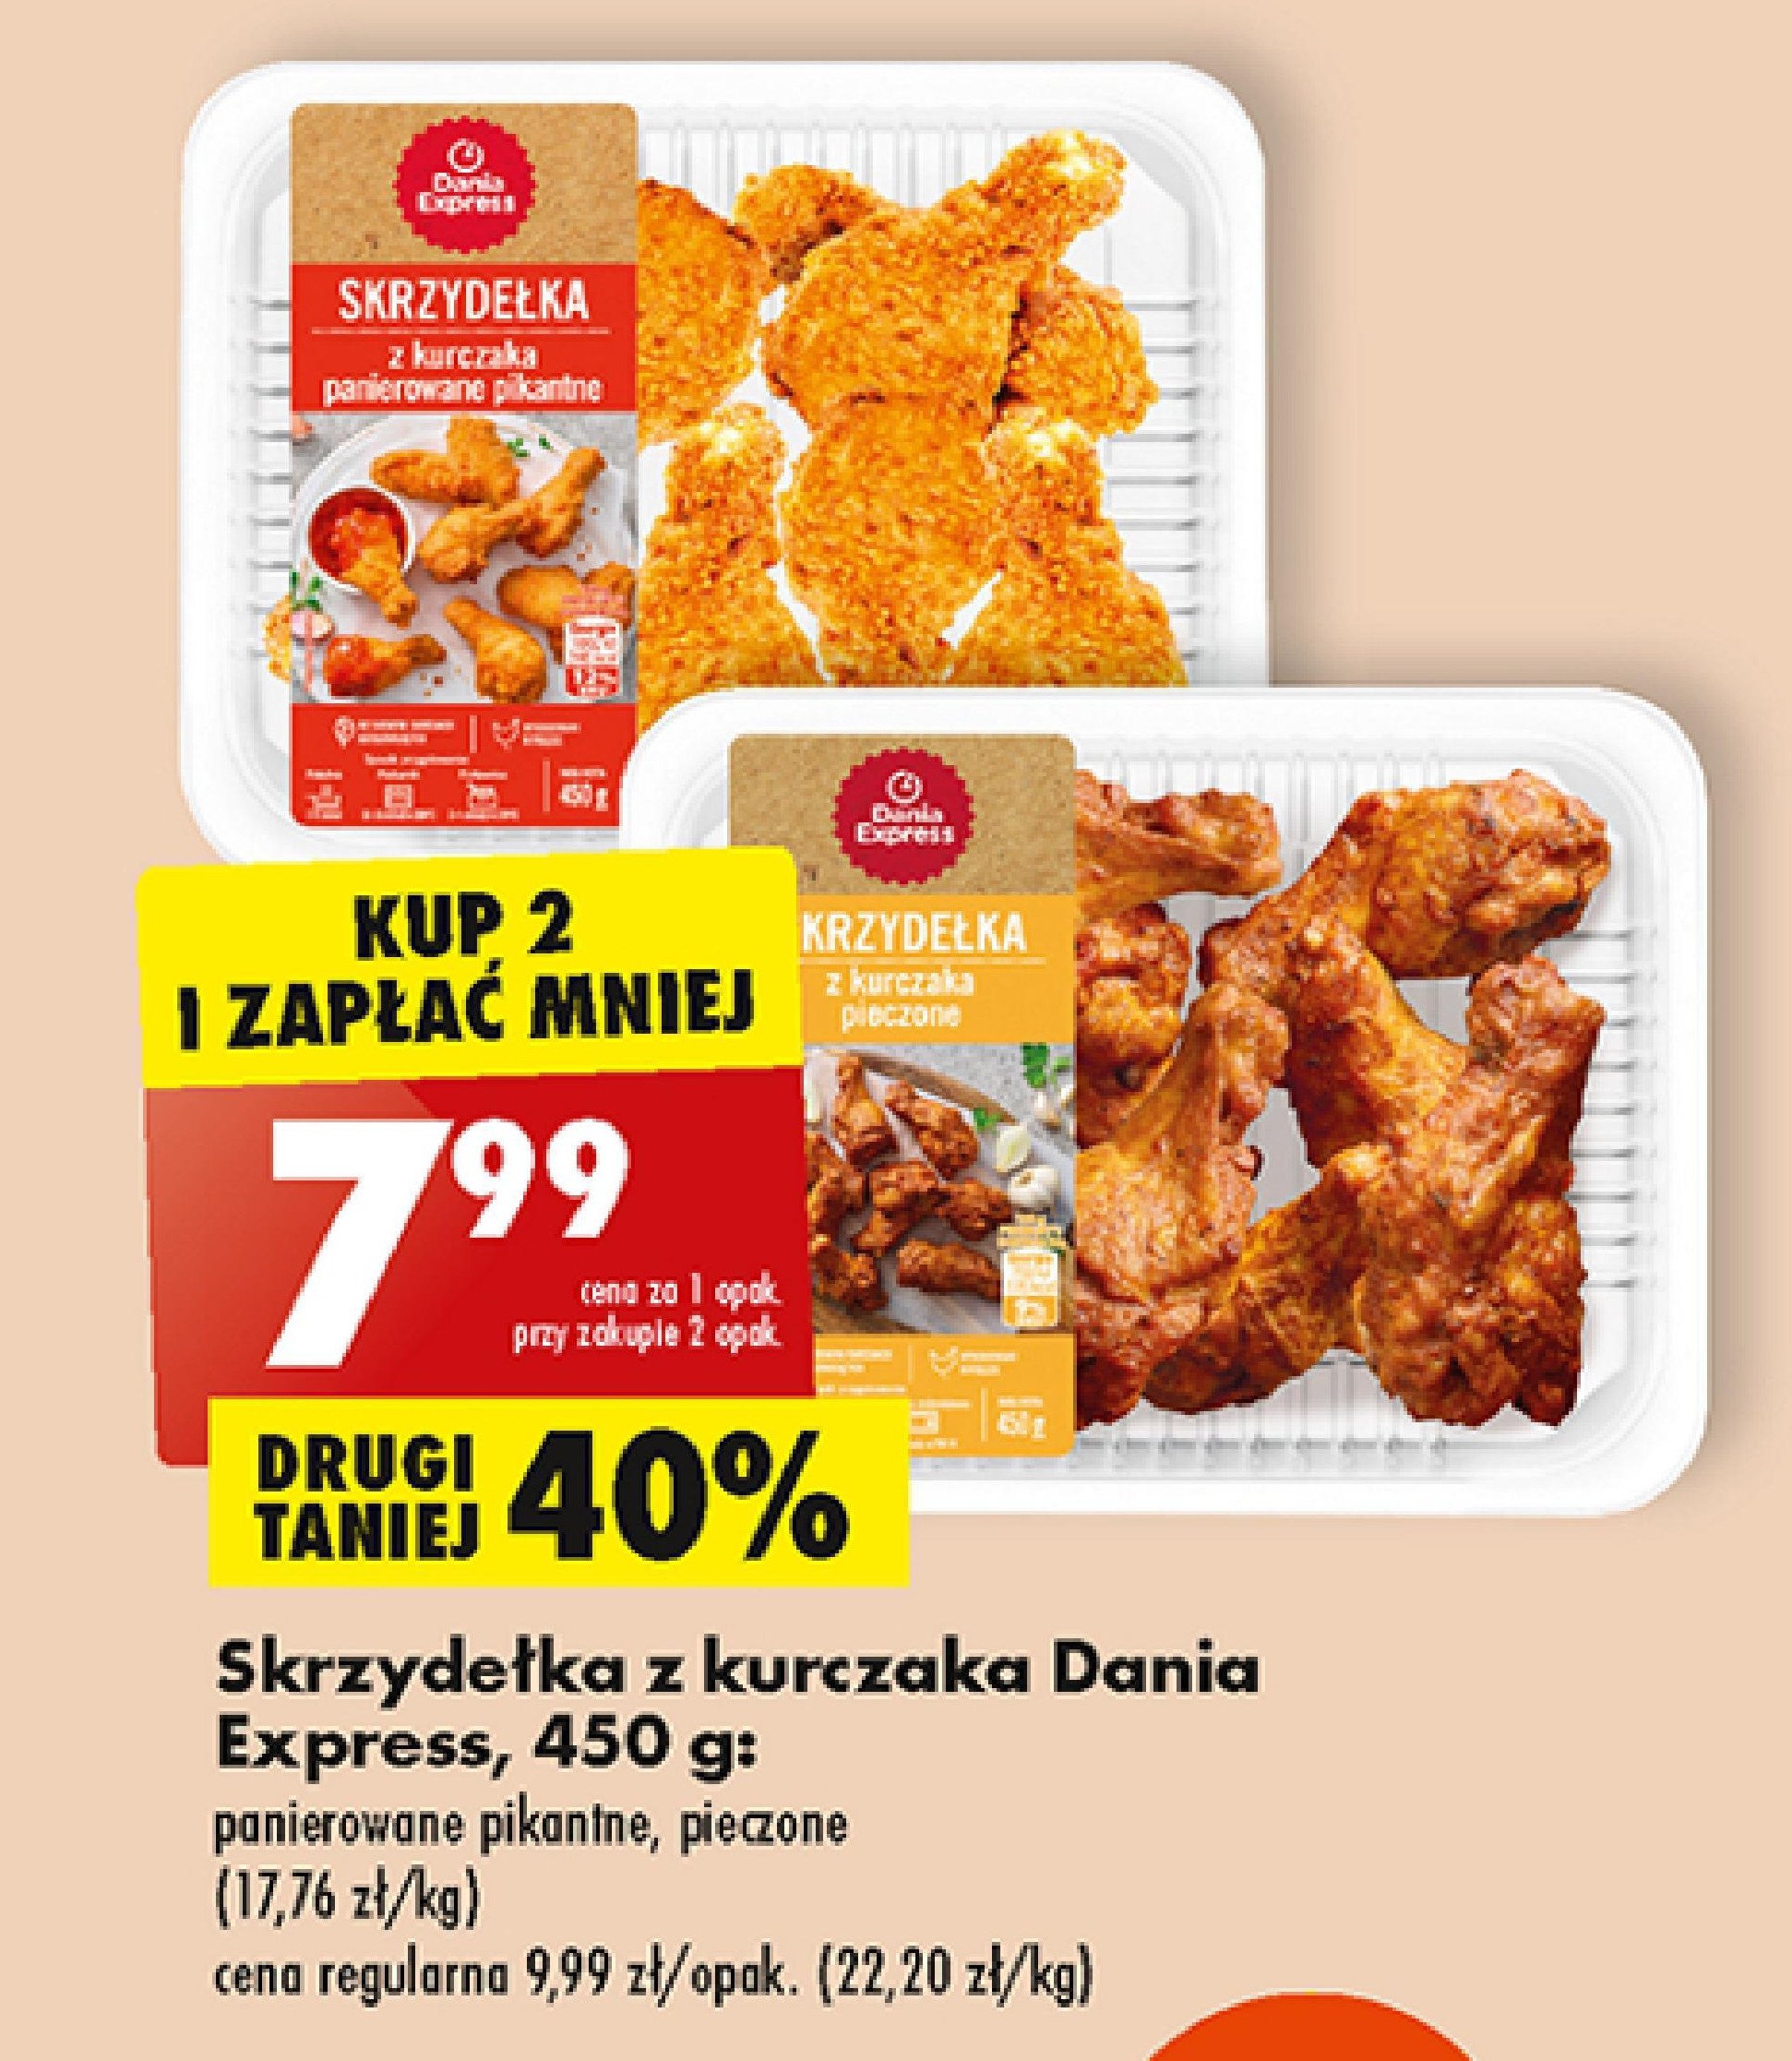 Skrzydełka z kurczaka panierowane pikantne Danie express promocja